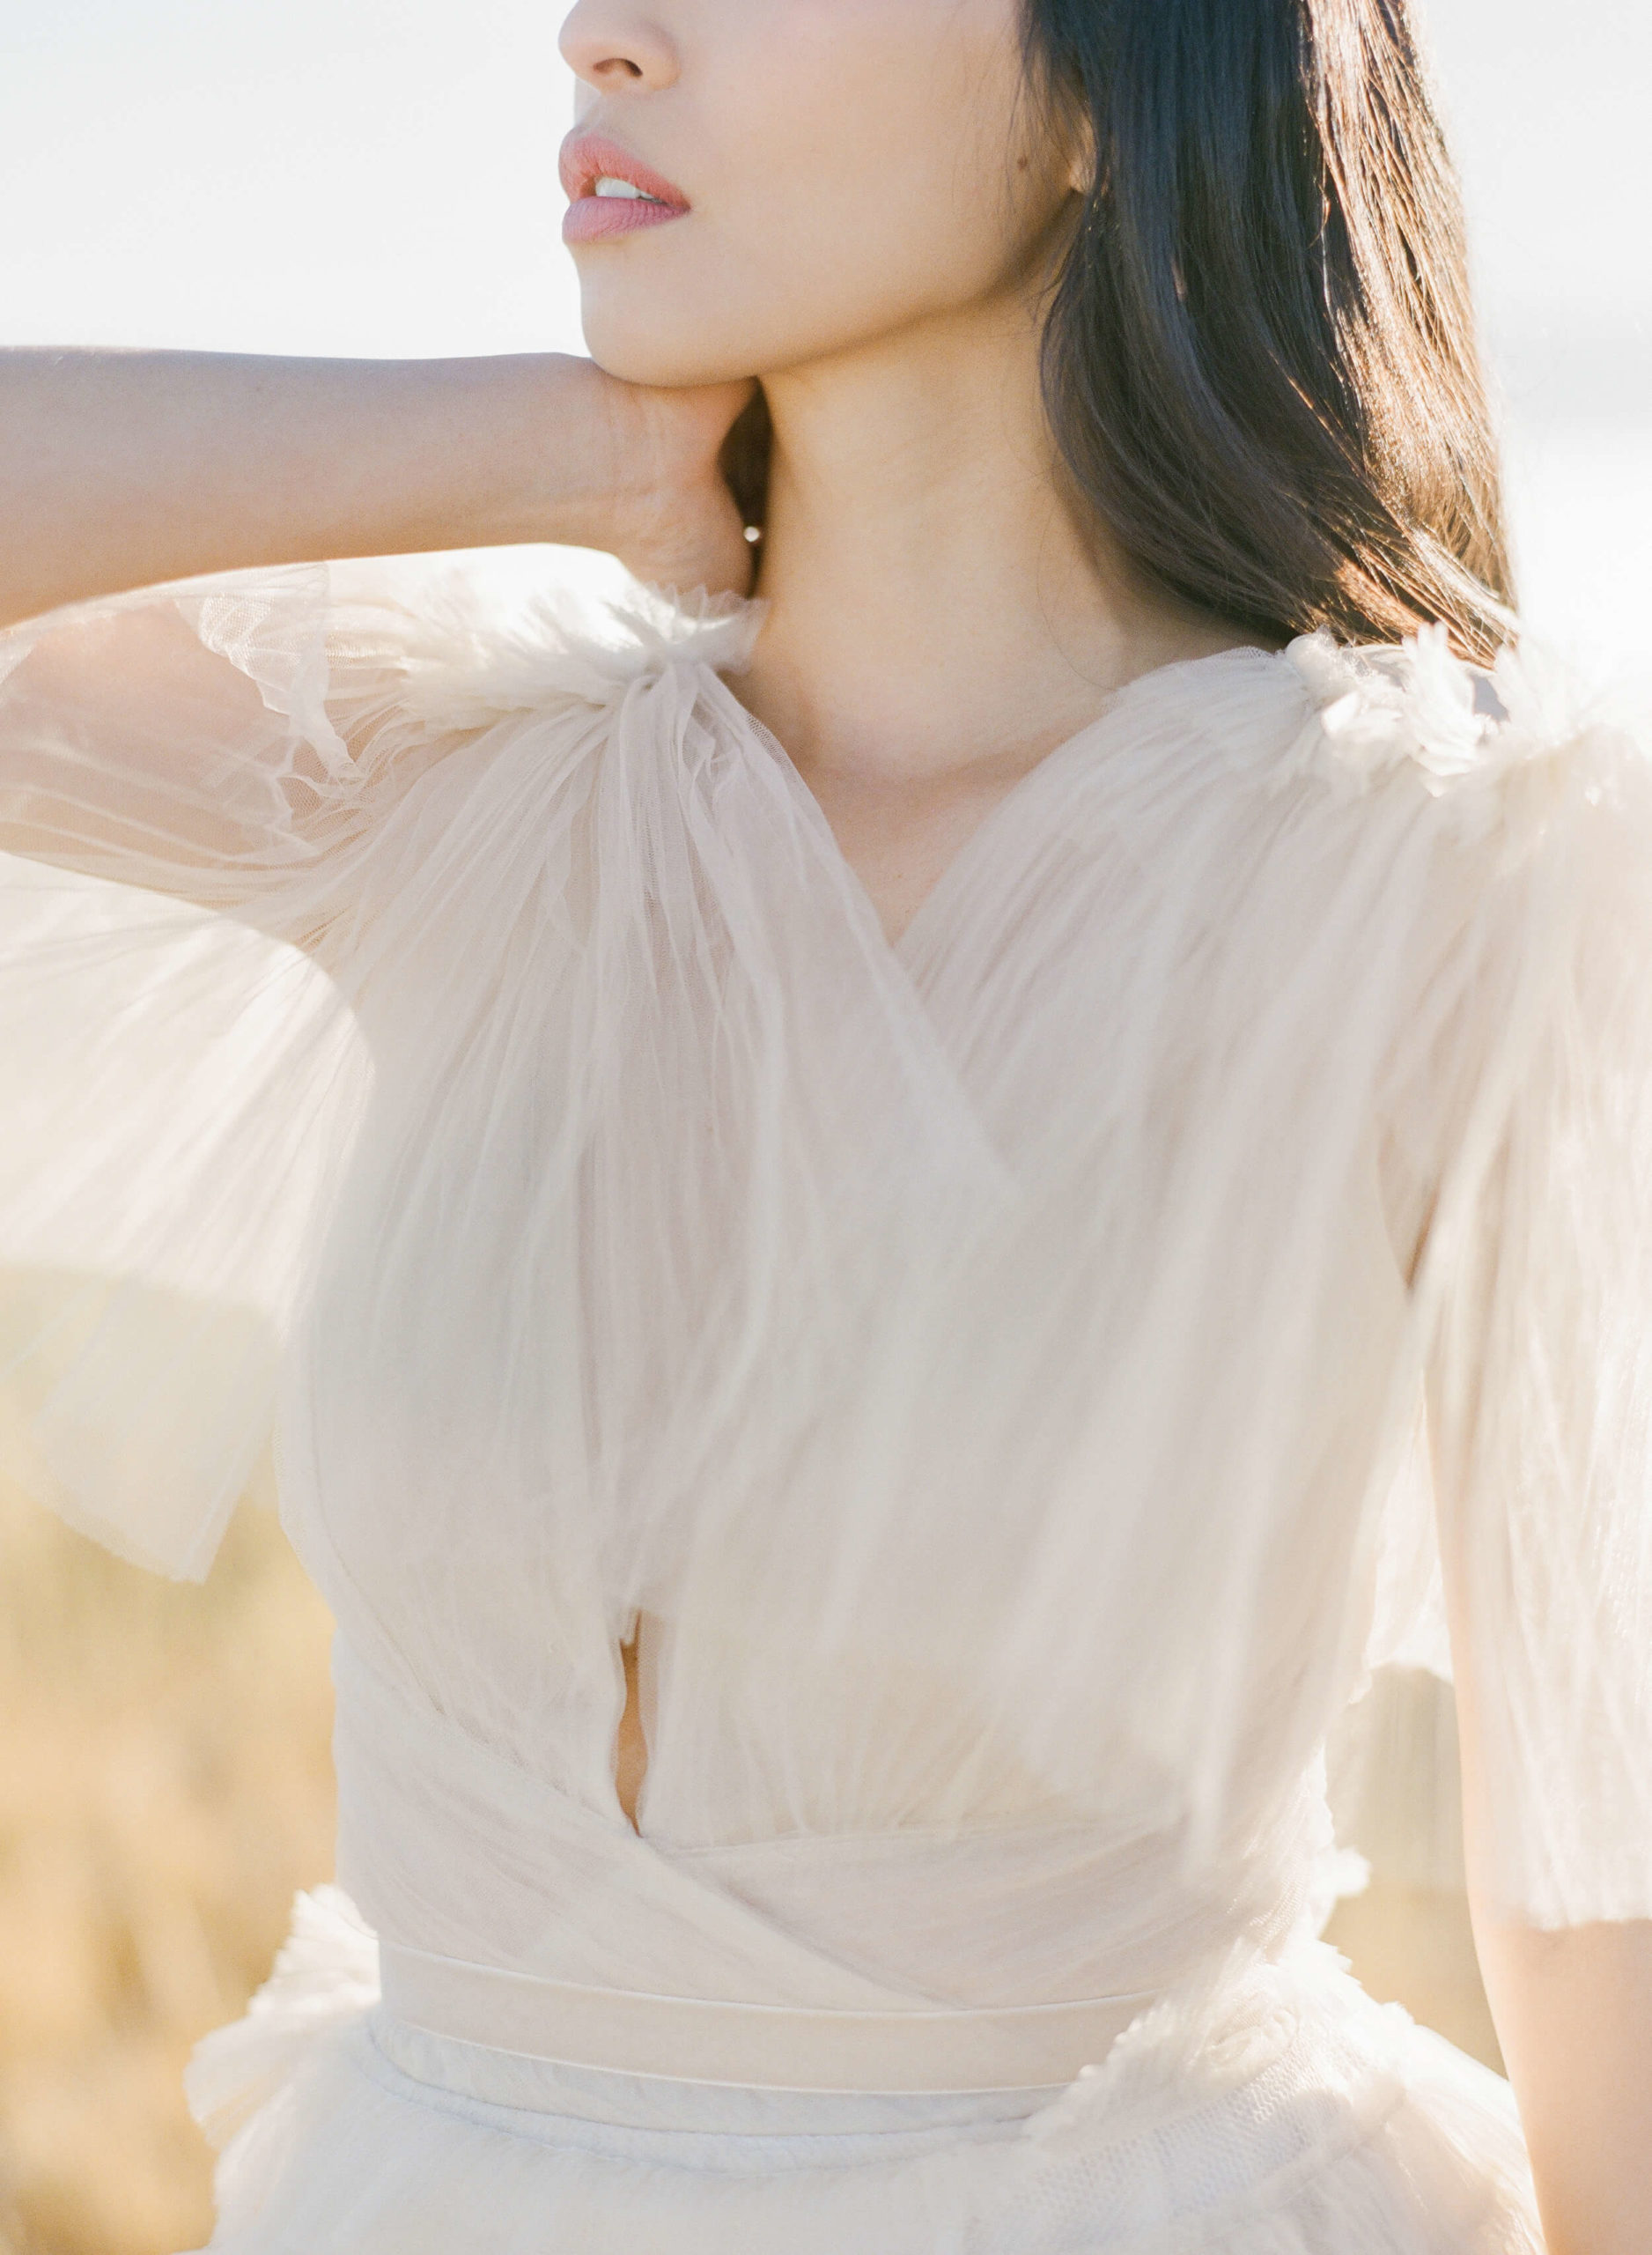 Creamy Aria Gown by Teuta Matoshi